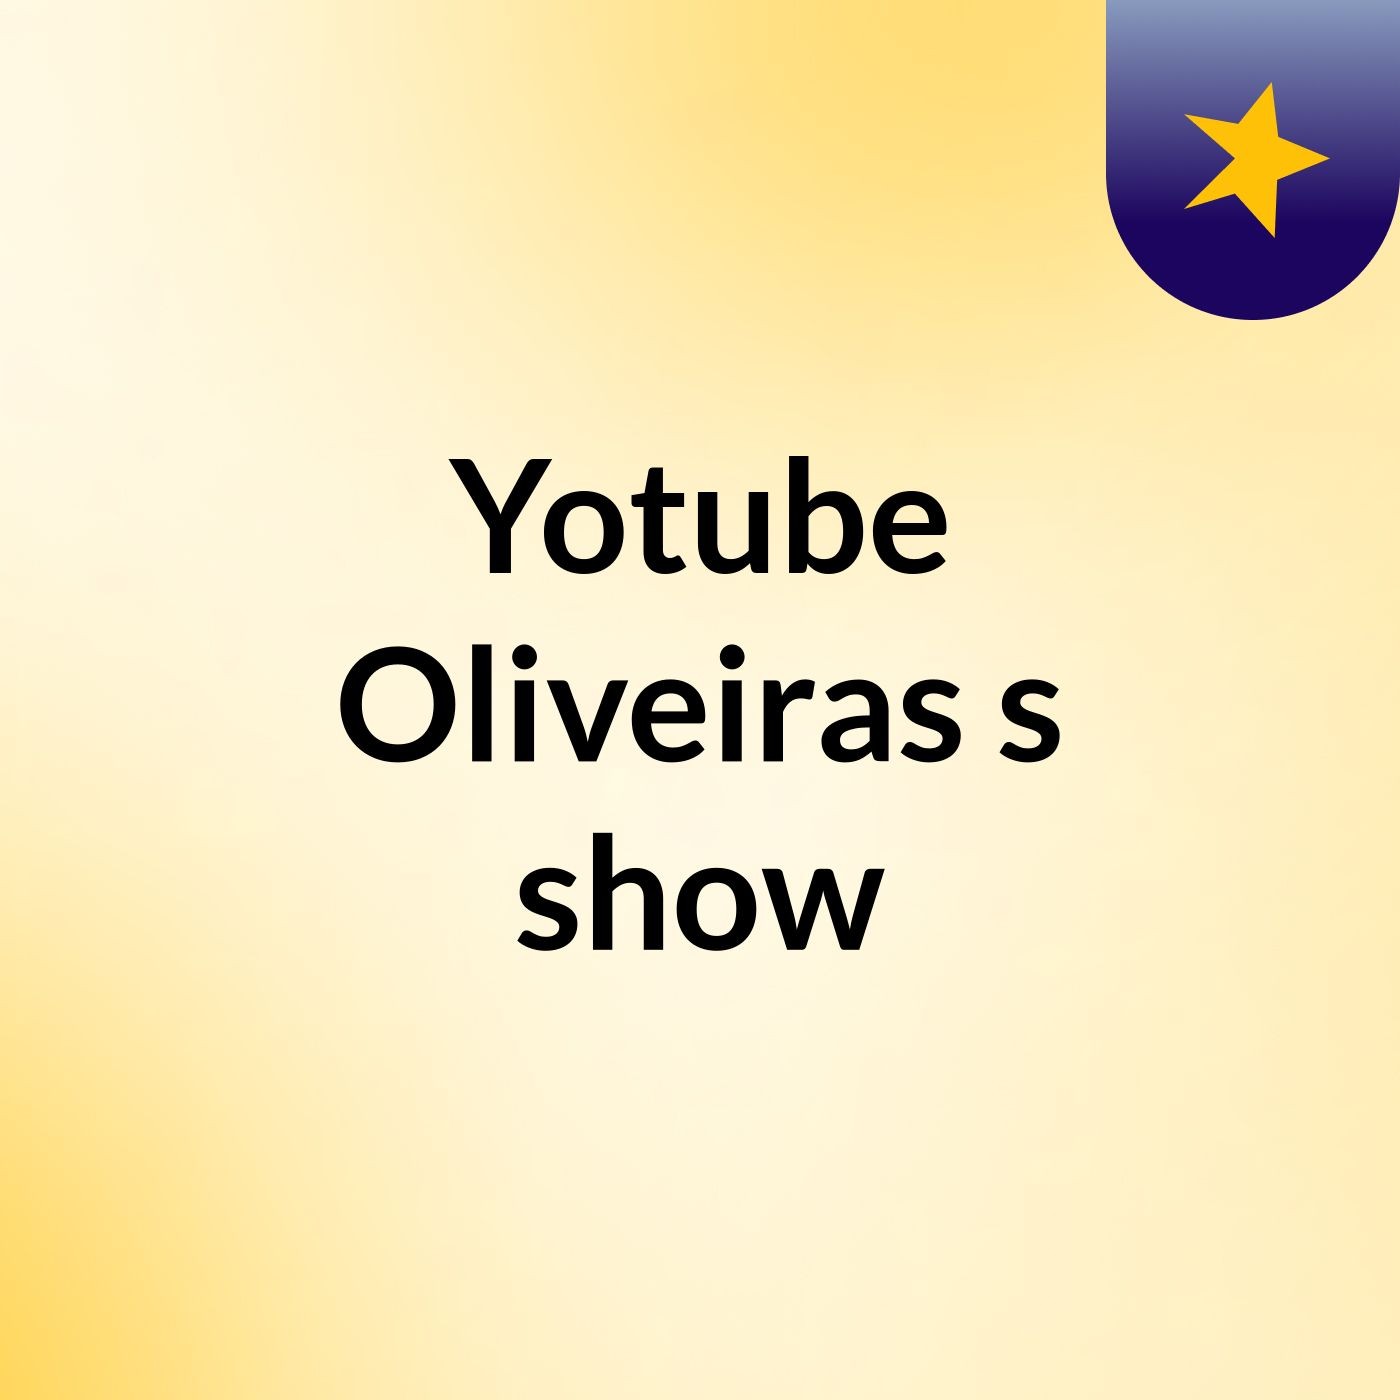 Episódio 8 - Yotube Oliveiras's show